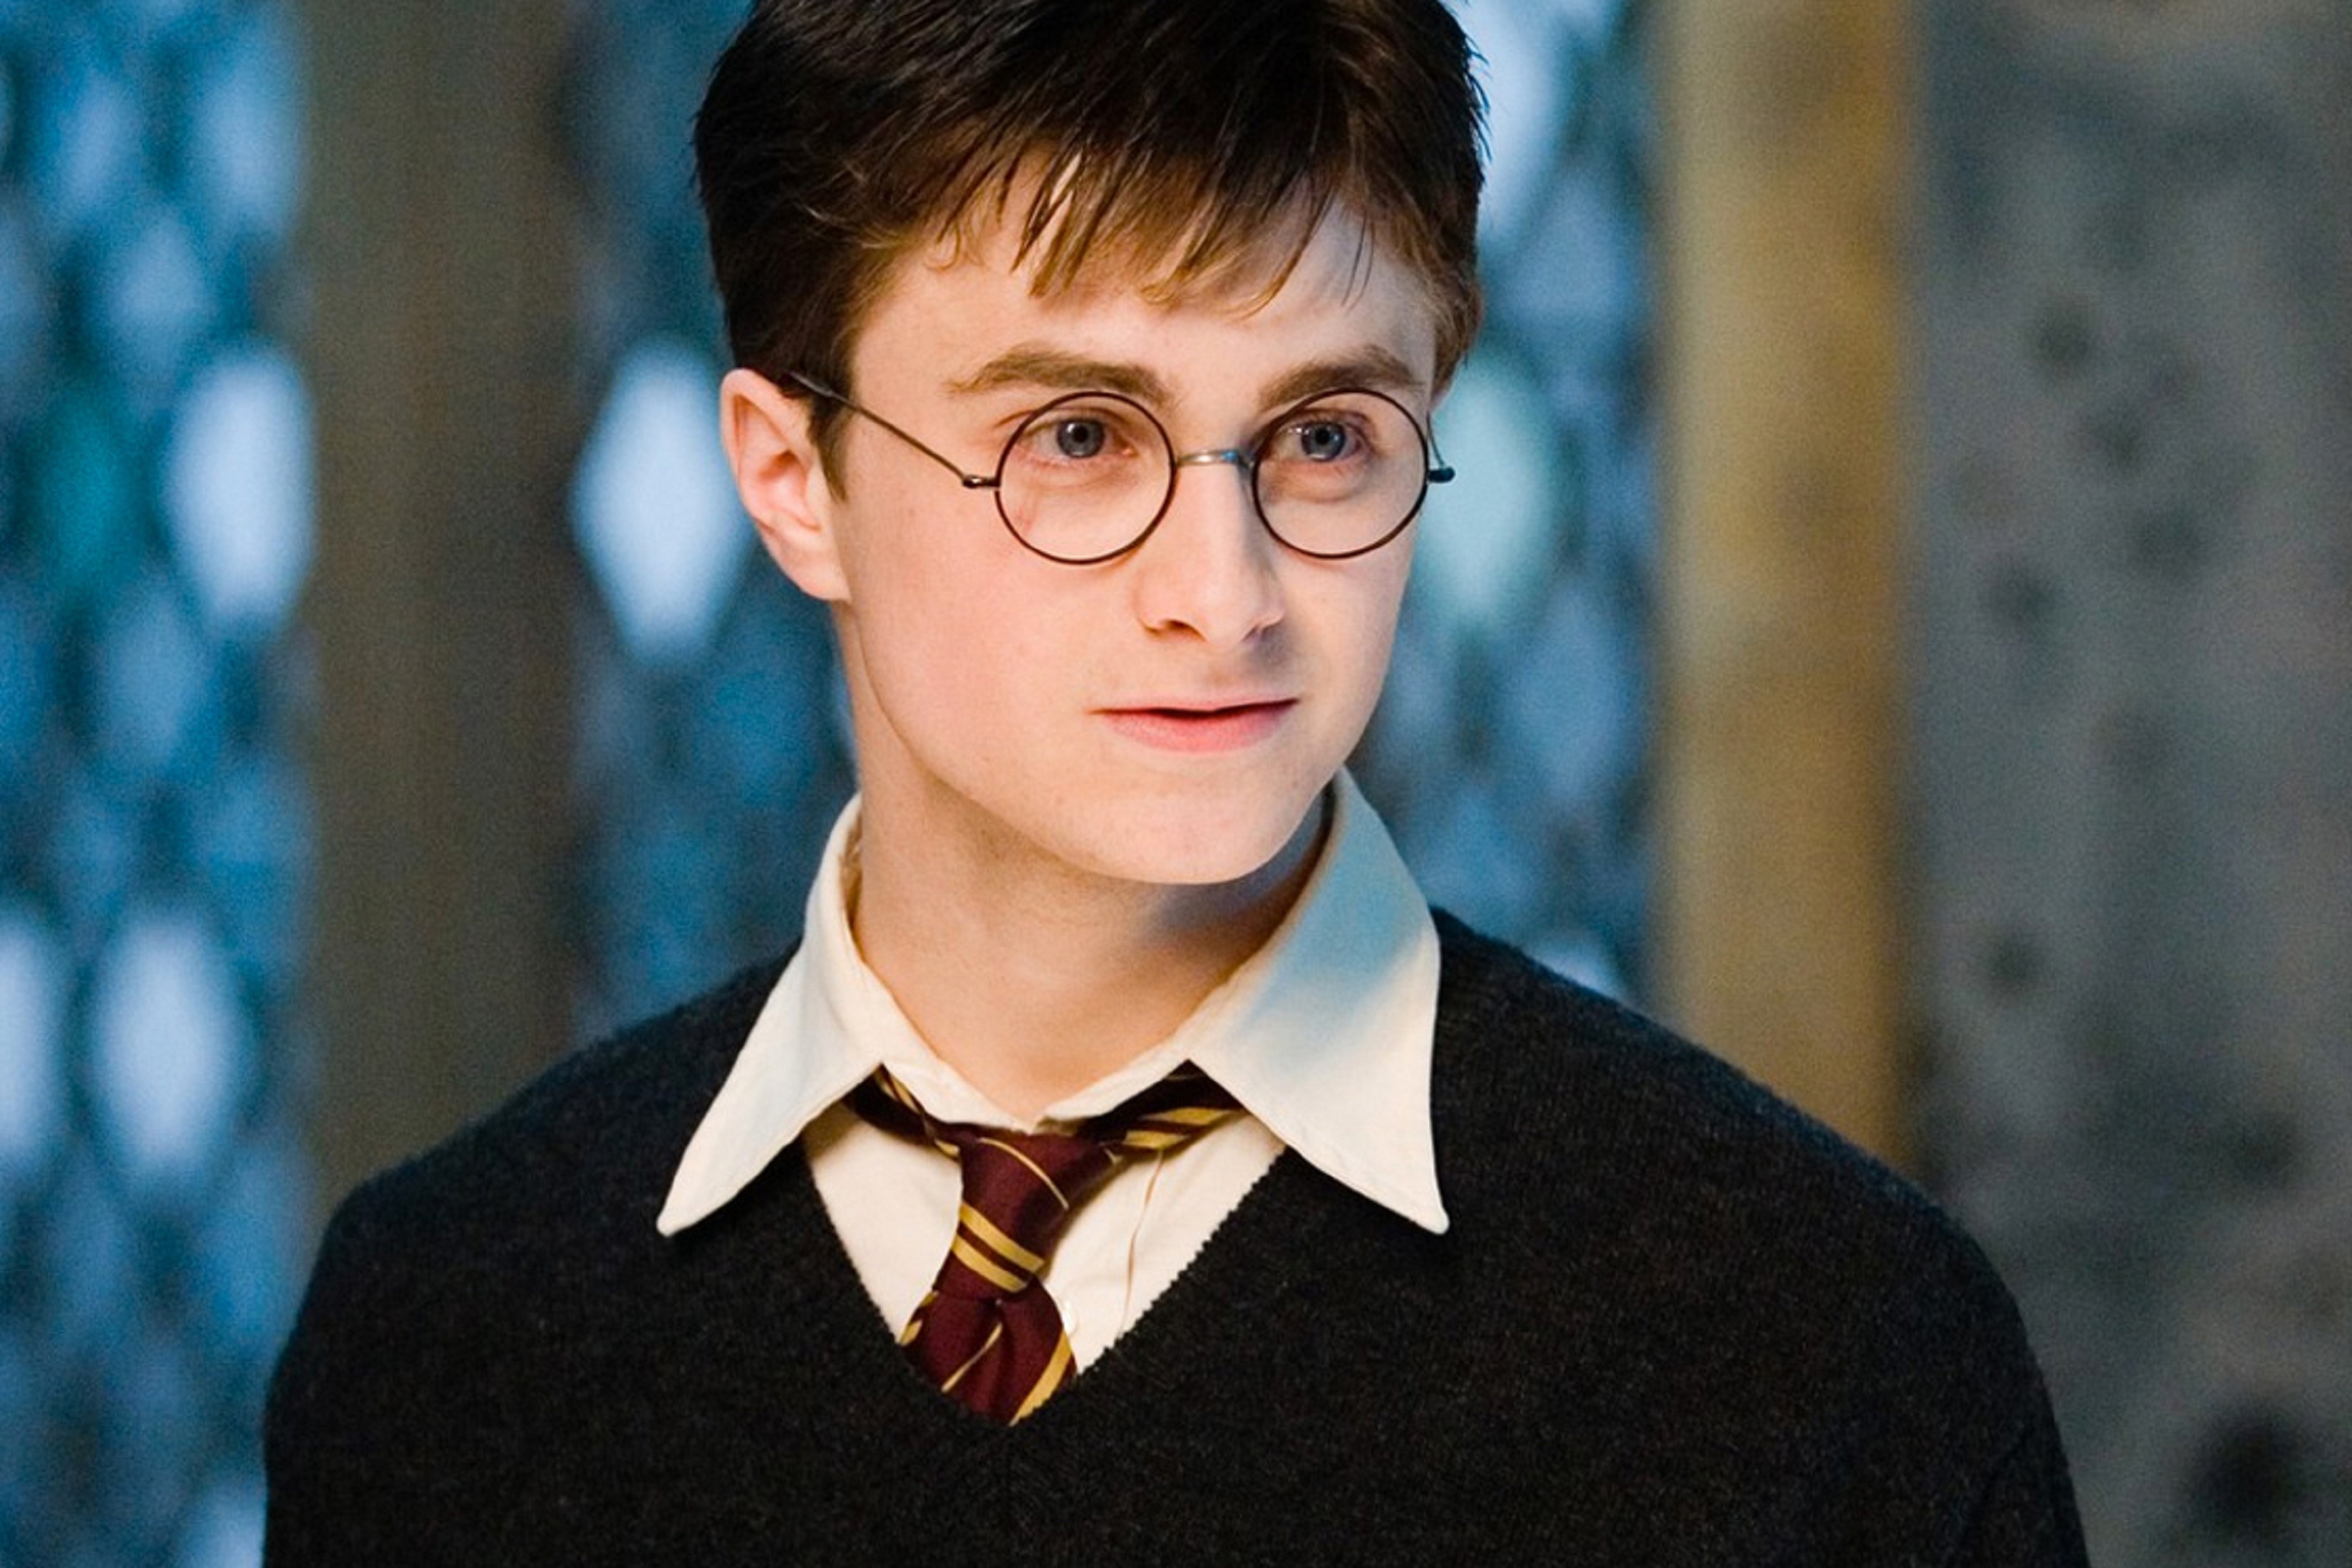 Hogwarts school: Último filme da saga Harry Potter estreia às